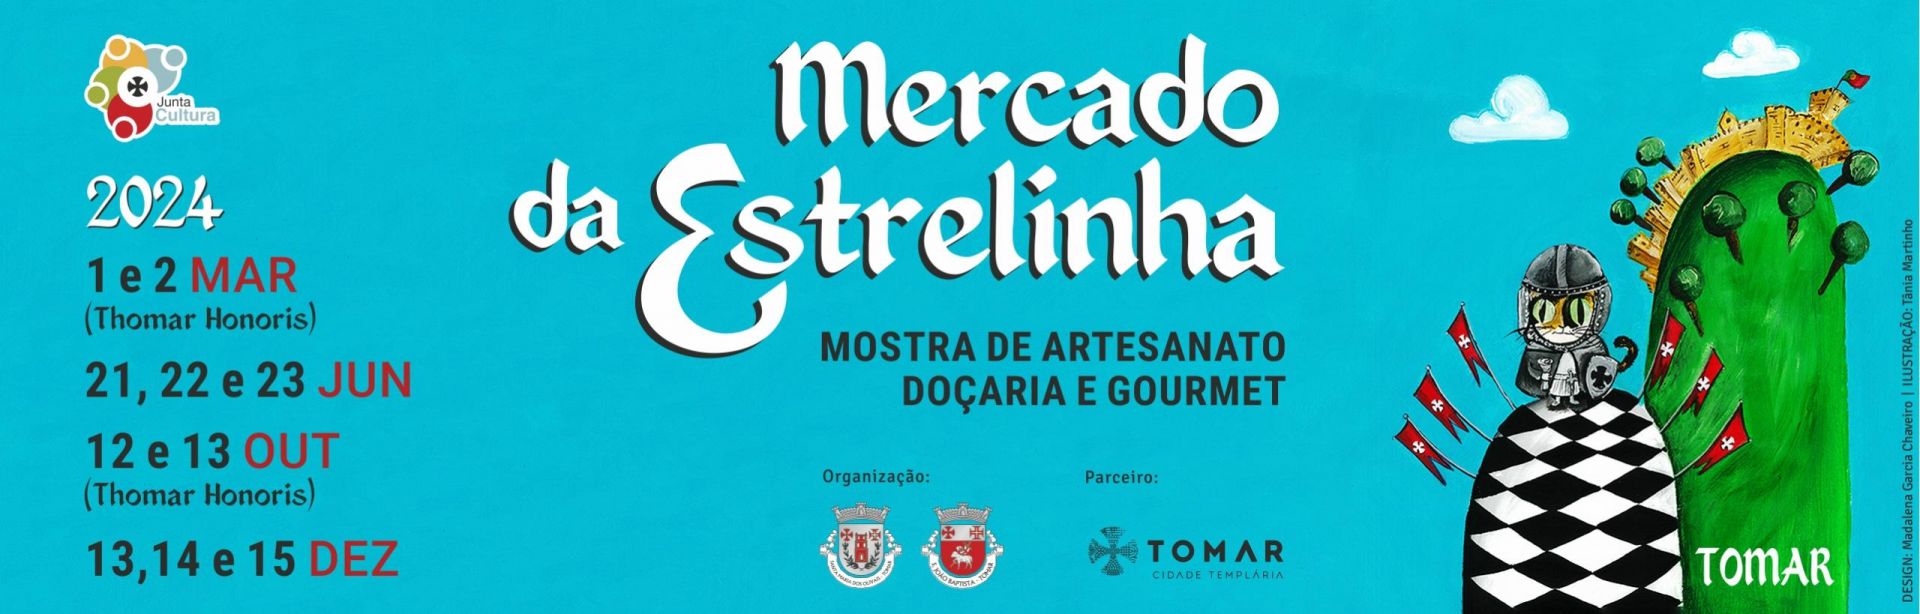 Mercado da Estrelinha, mostra de artesanato, doçaria e gourmet 2023